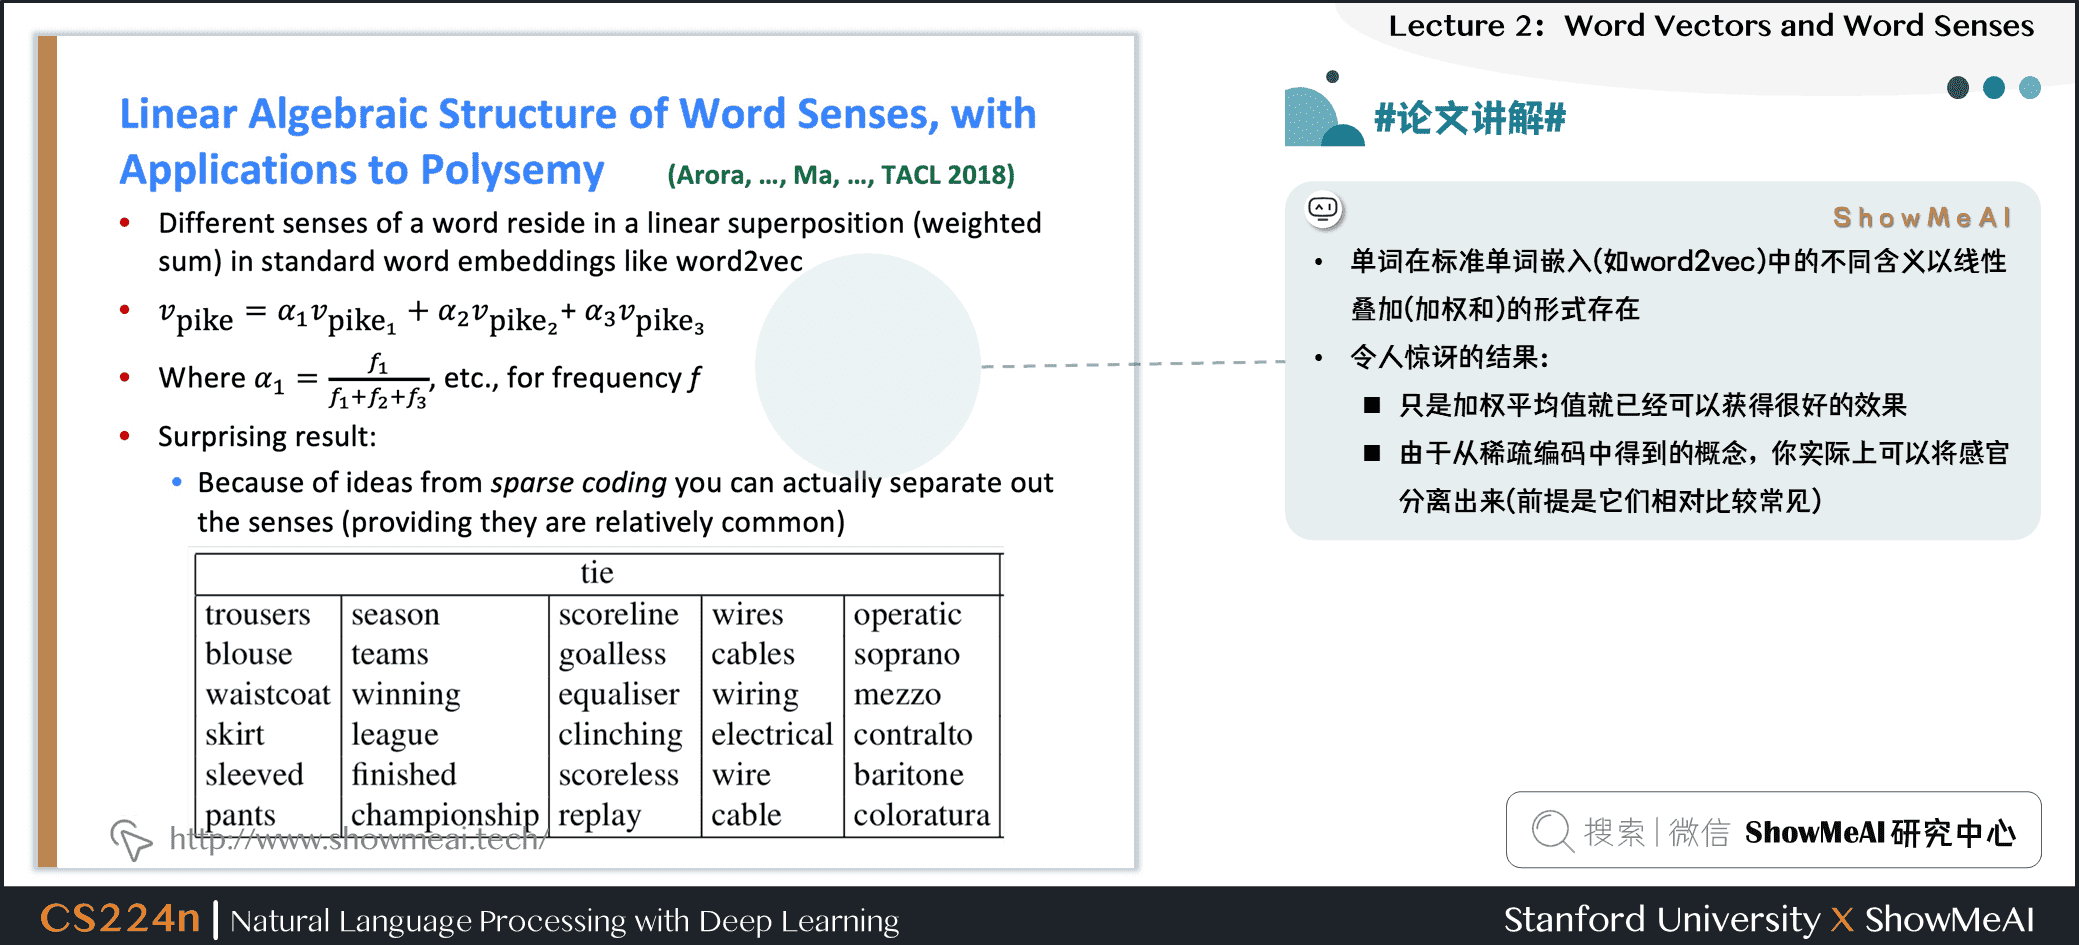 #论文讲解# Linear Algebraic Structure of Word Senses, with Applications to Polysemy